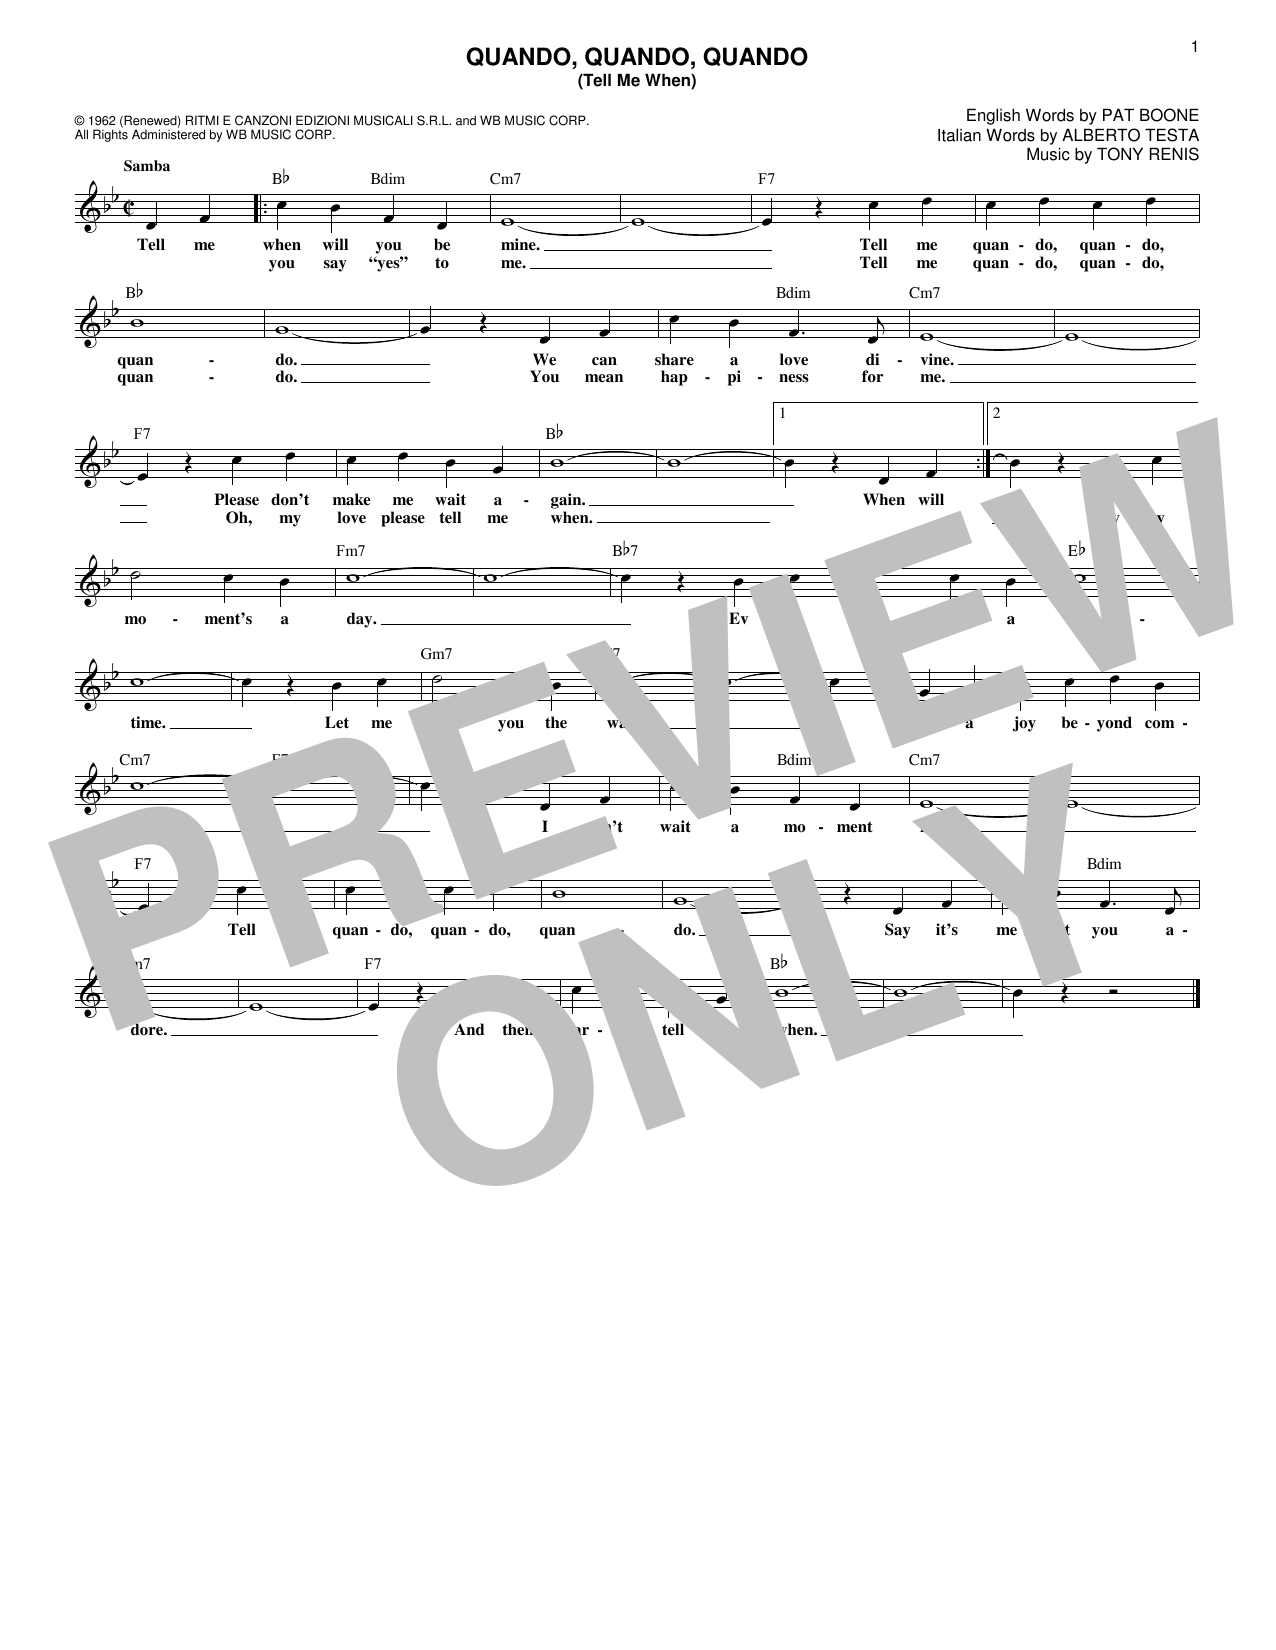 Alberto Testa Quando, Quando, Quando (Tell Me When) sheet music notes and chords arranged for Lead Sheet / Fake Book